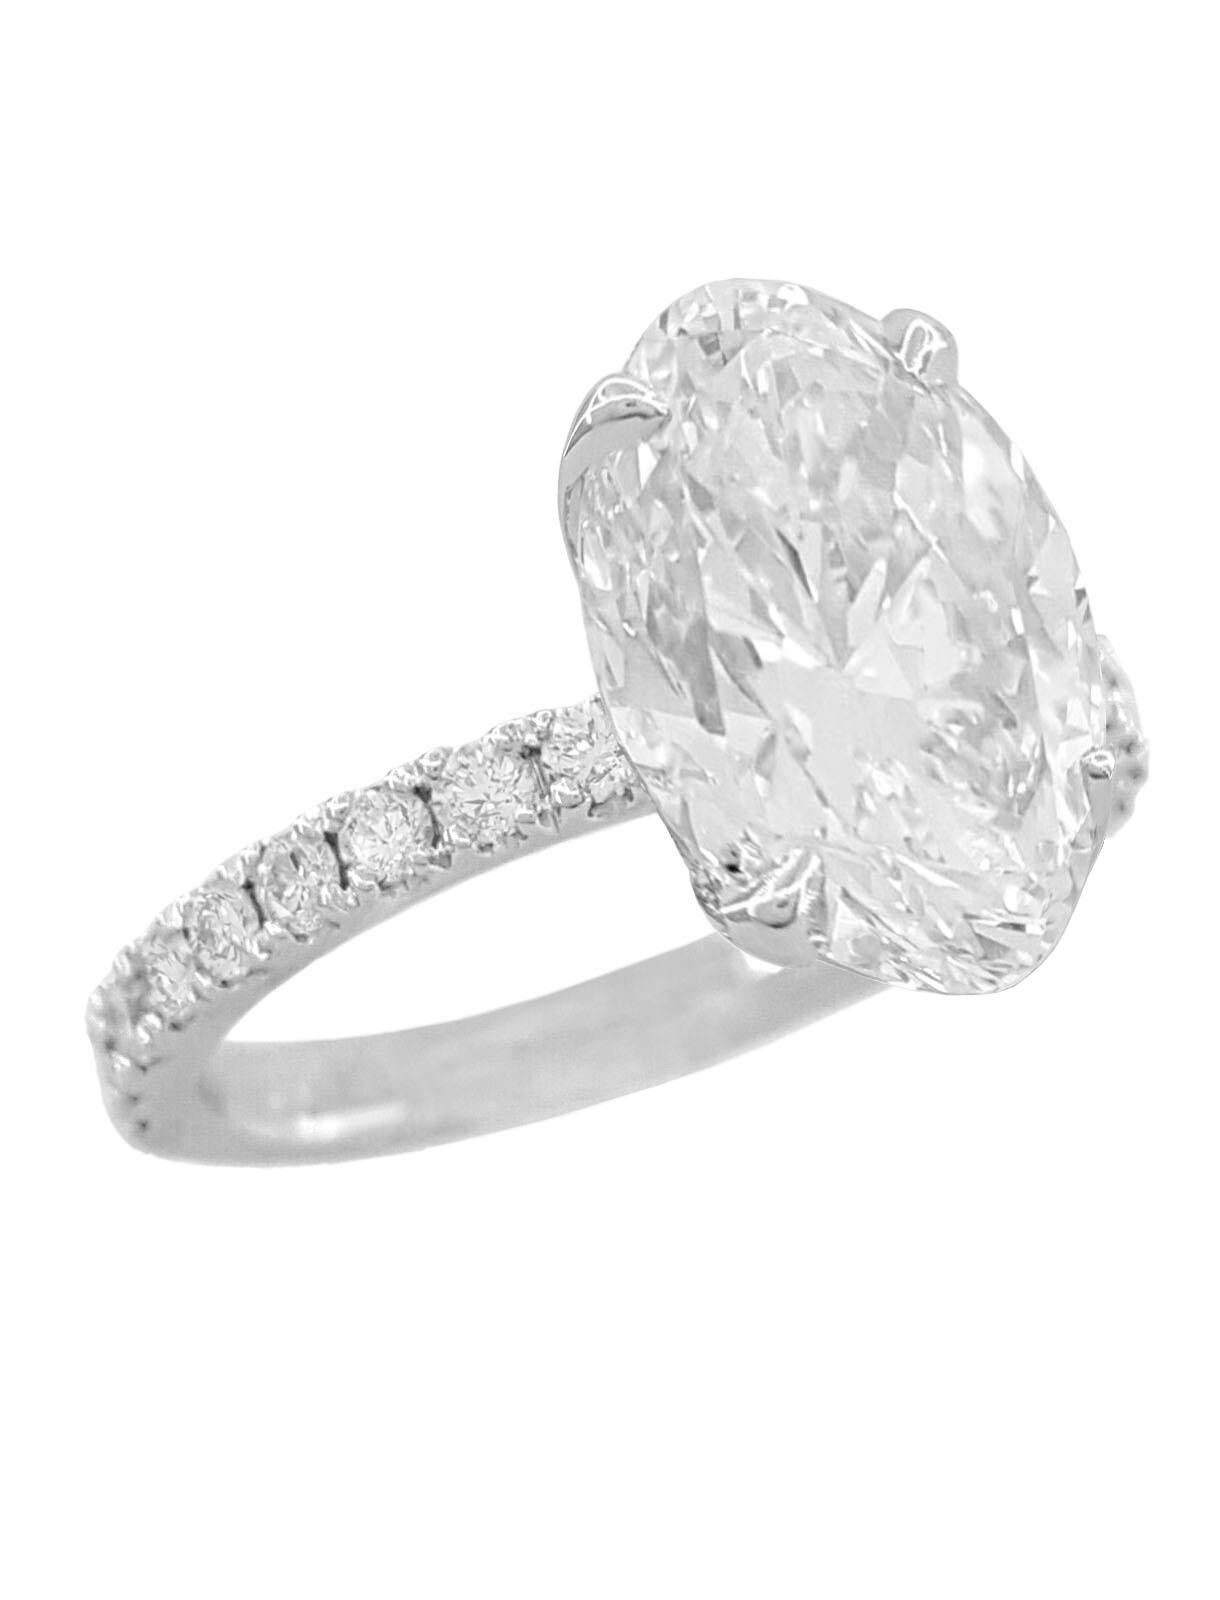 Contemporain GIA 4 Ct E Color VS Clarity Oval Brilliant Cut Diamond 18K White Gold Ring  en vente